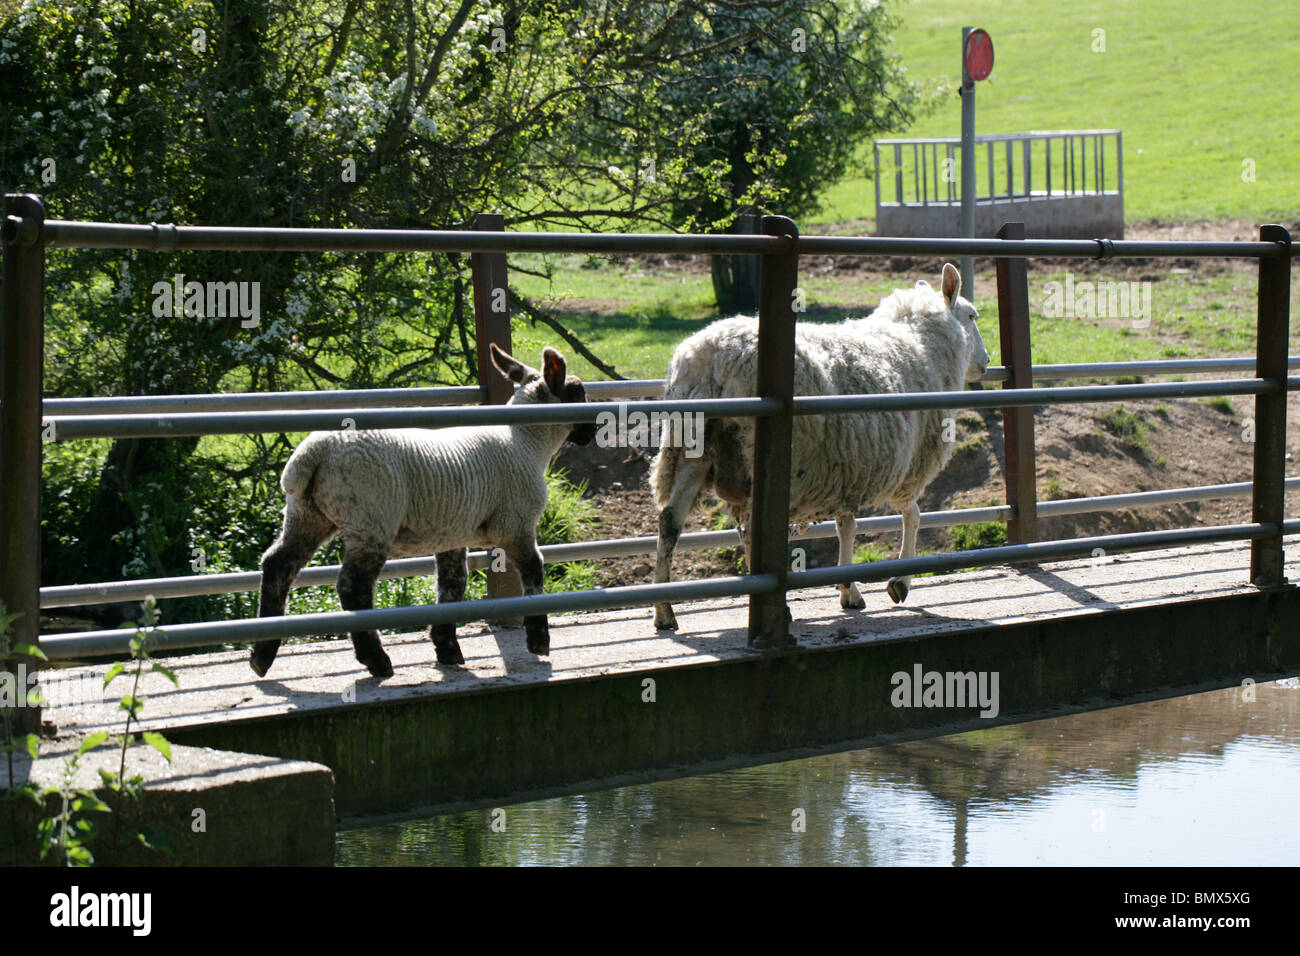 Una oveja con su cordero cruzando un puente del río Foto de stock